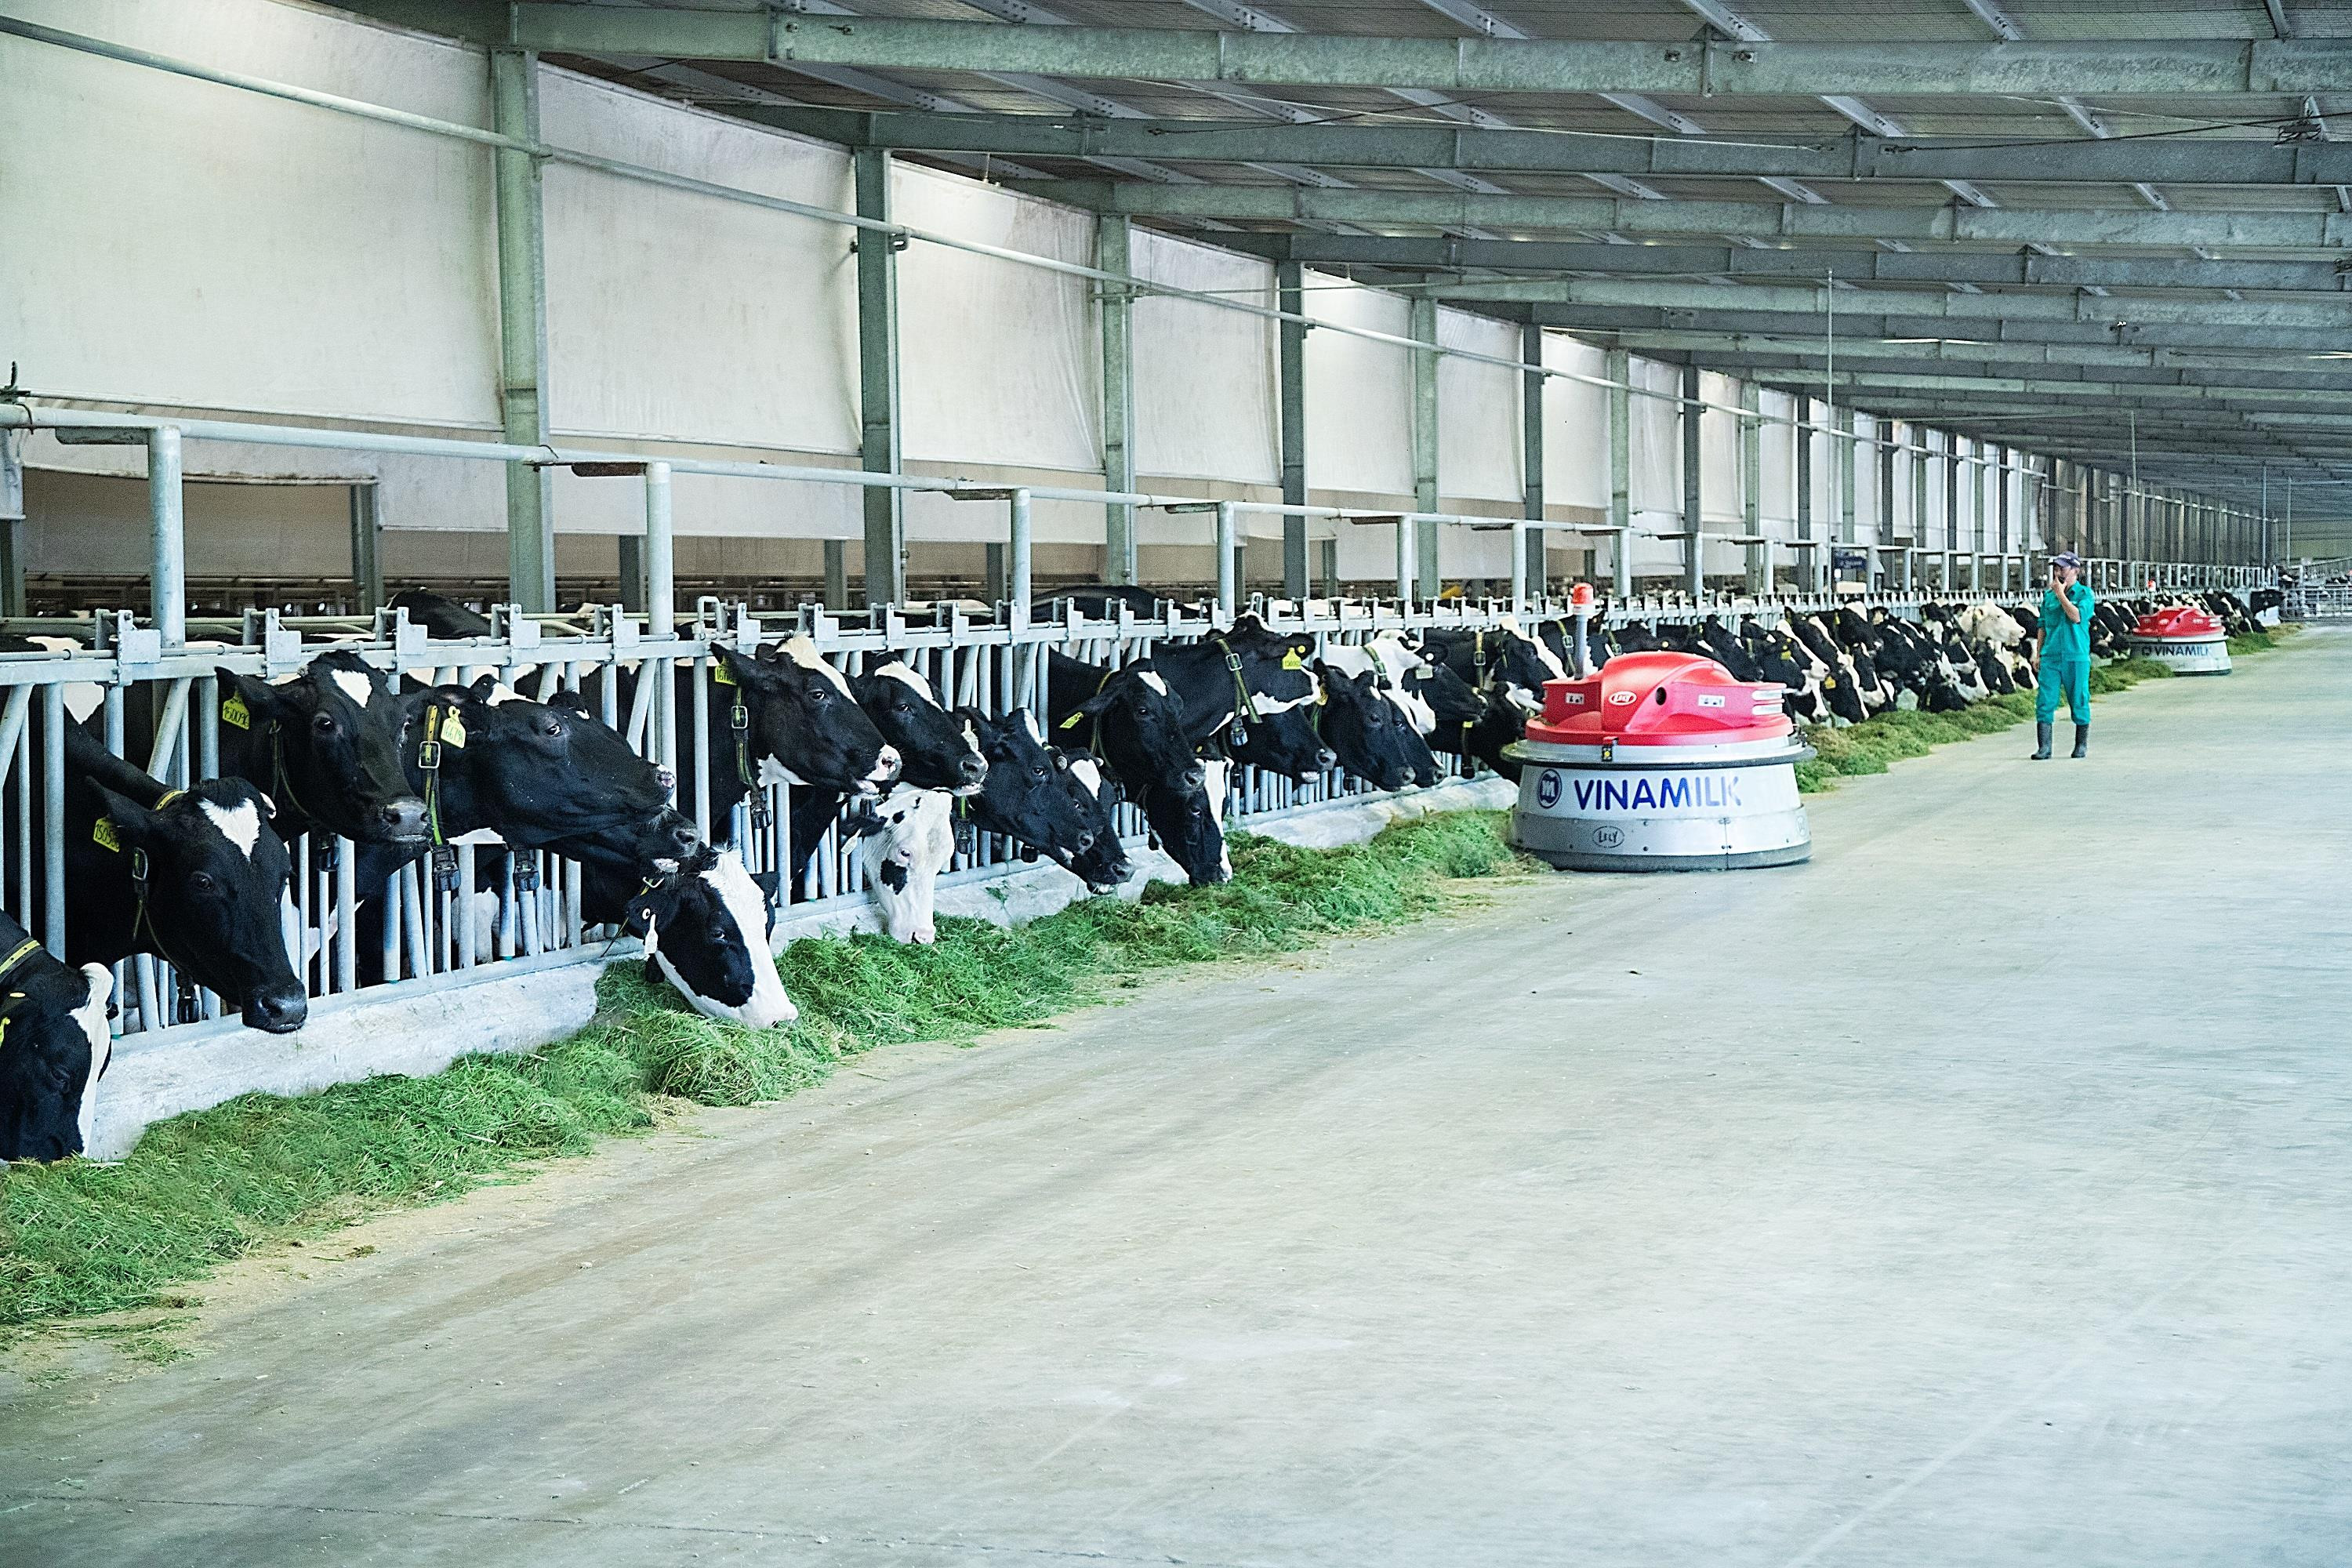 Các trang trại trong hệ thống của Vinamilk đều đang được áp dụng các công nghệ hiện đại trong quản lý và chăn nuôi. Ảnh: P.V